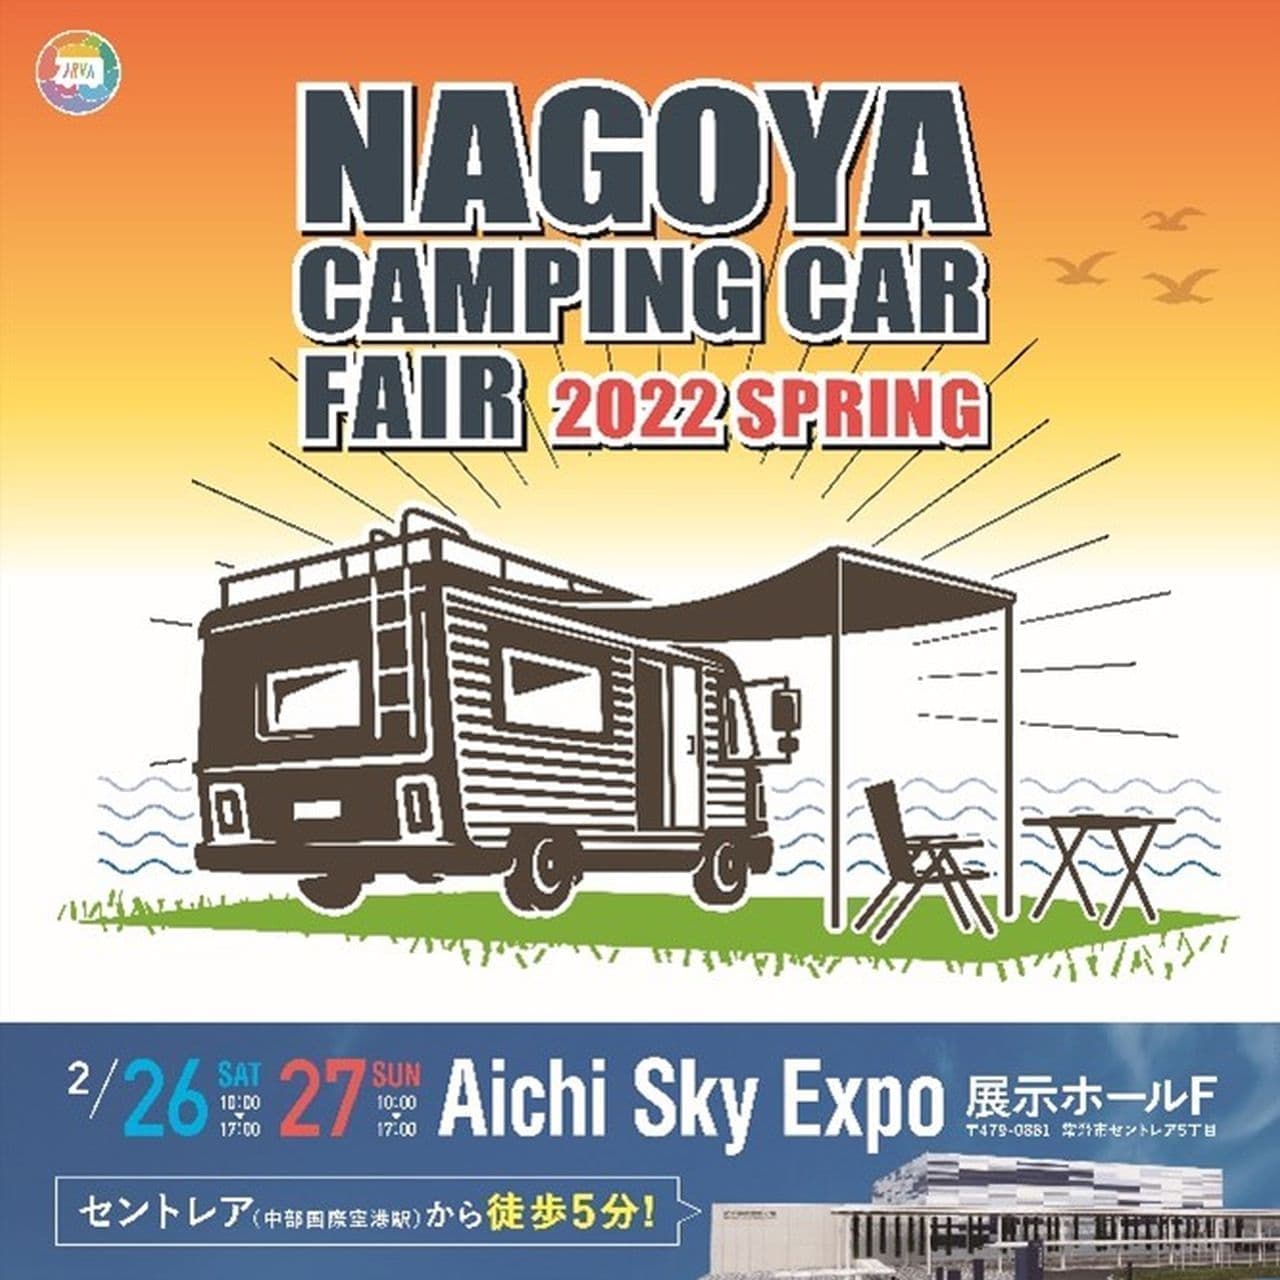 「名古屋キャンピングカーフェア 2022 SPRING」2月26日・27日開催 150台以上のキャンピングカー・キャンピングトレーラーが集結